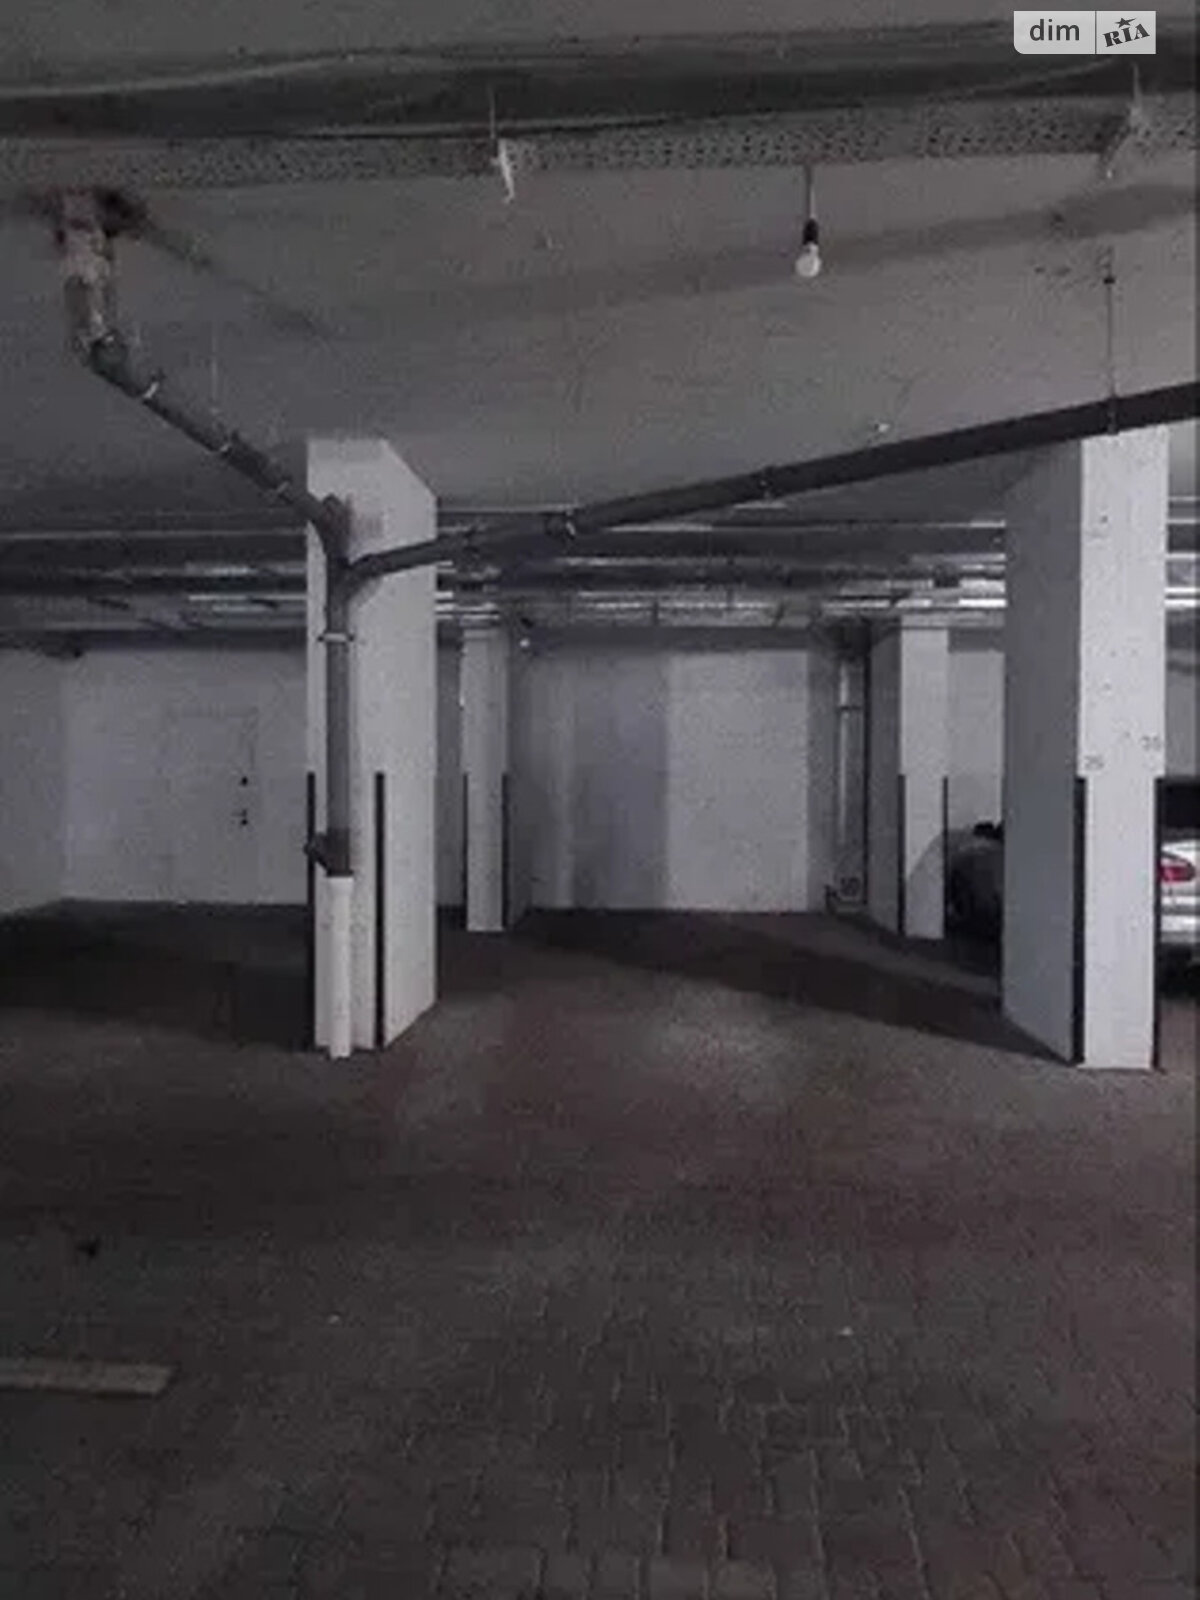 Місце в підземному паркінгу під легкове авто в Дніпрі, площа 16 кв.м. фото 1